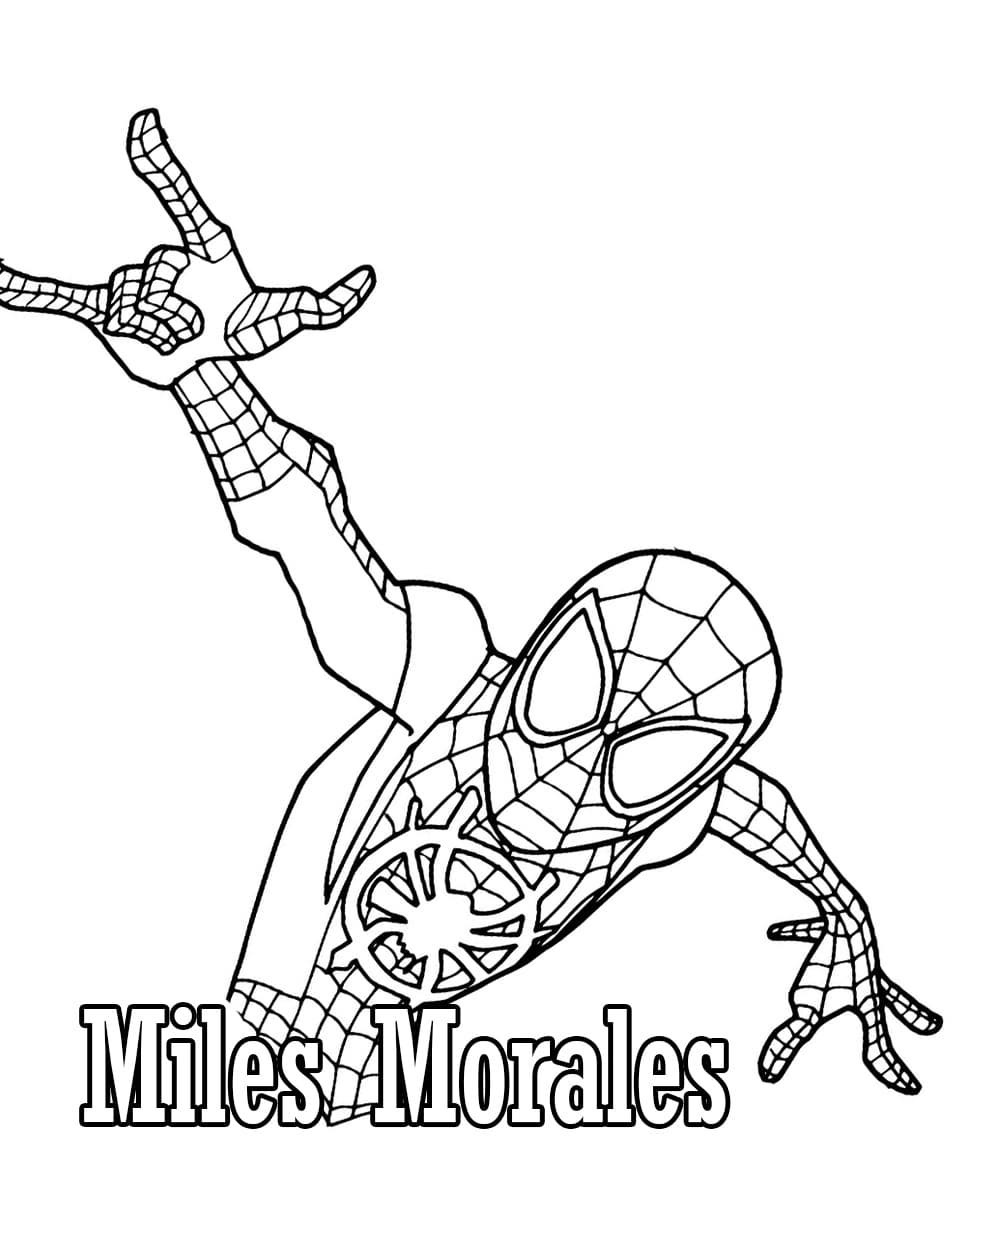 Miles morales spiderman 04